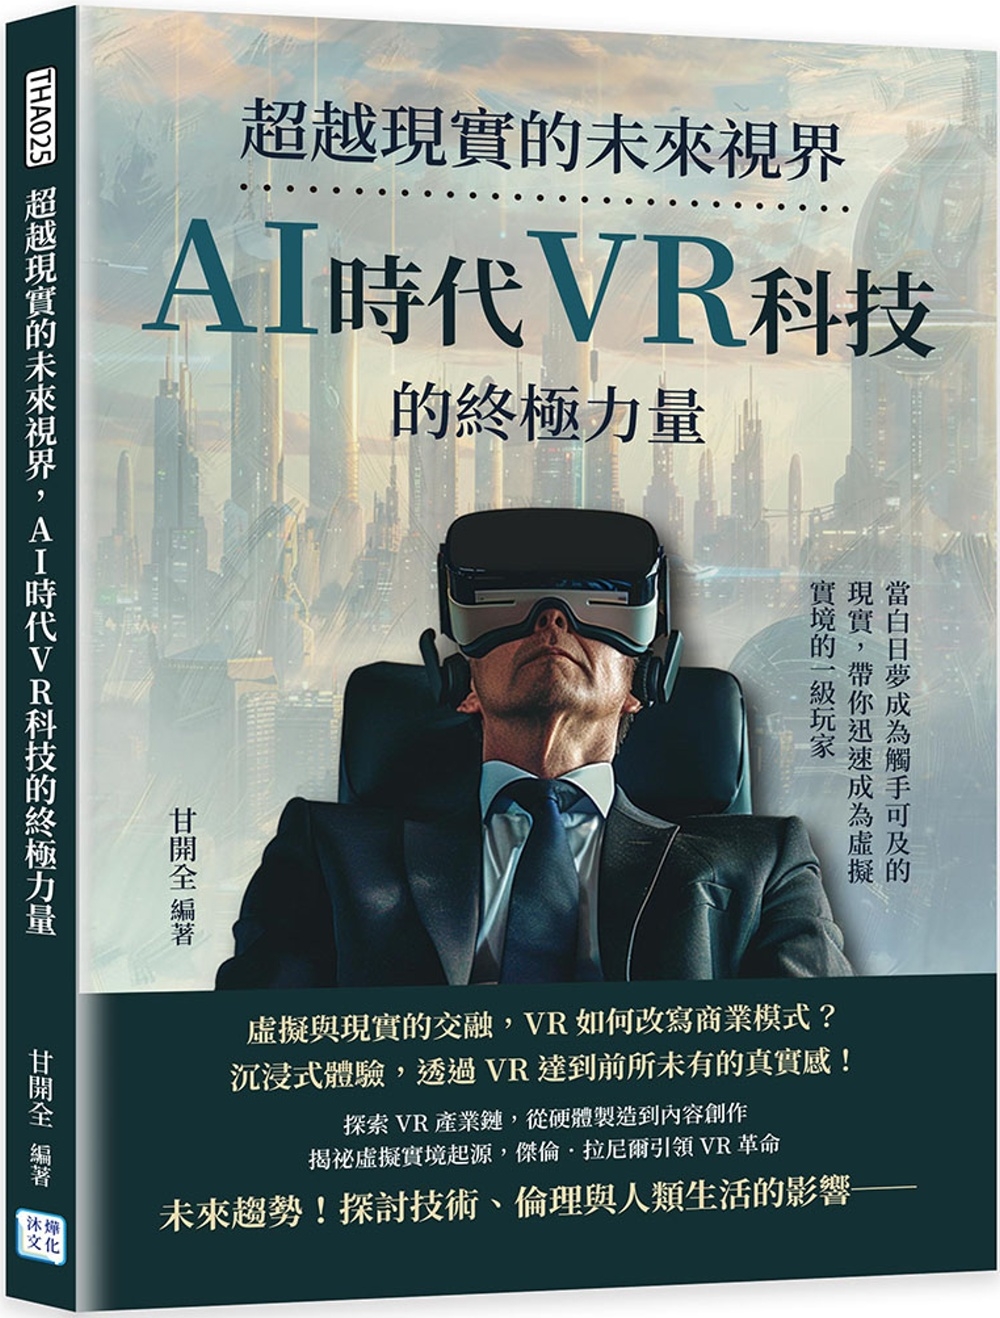 超越現實的未來視界，AI時代VR科技的終極力量：當白日夢成為...